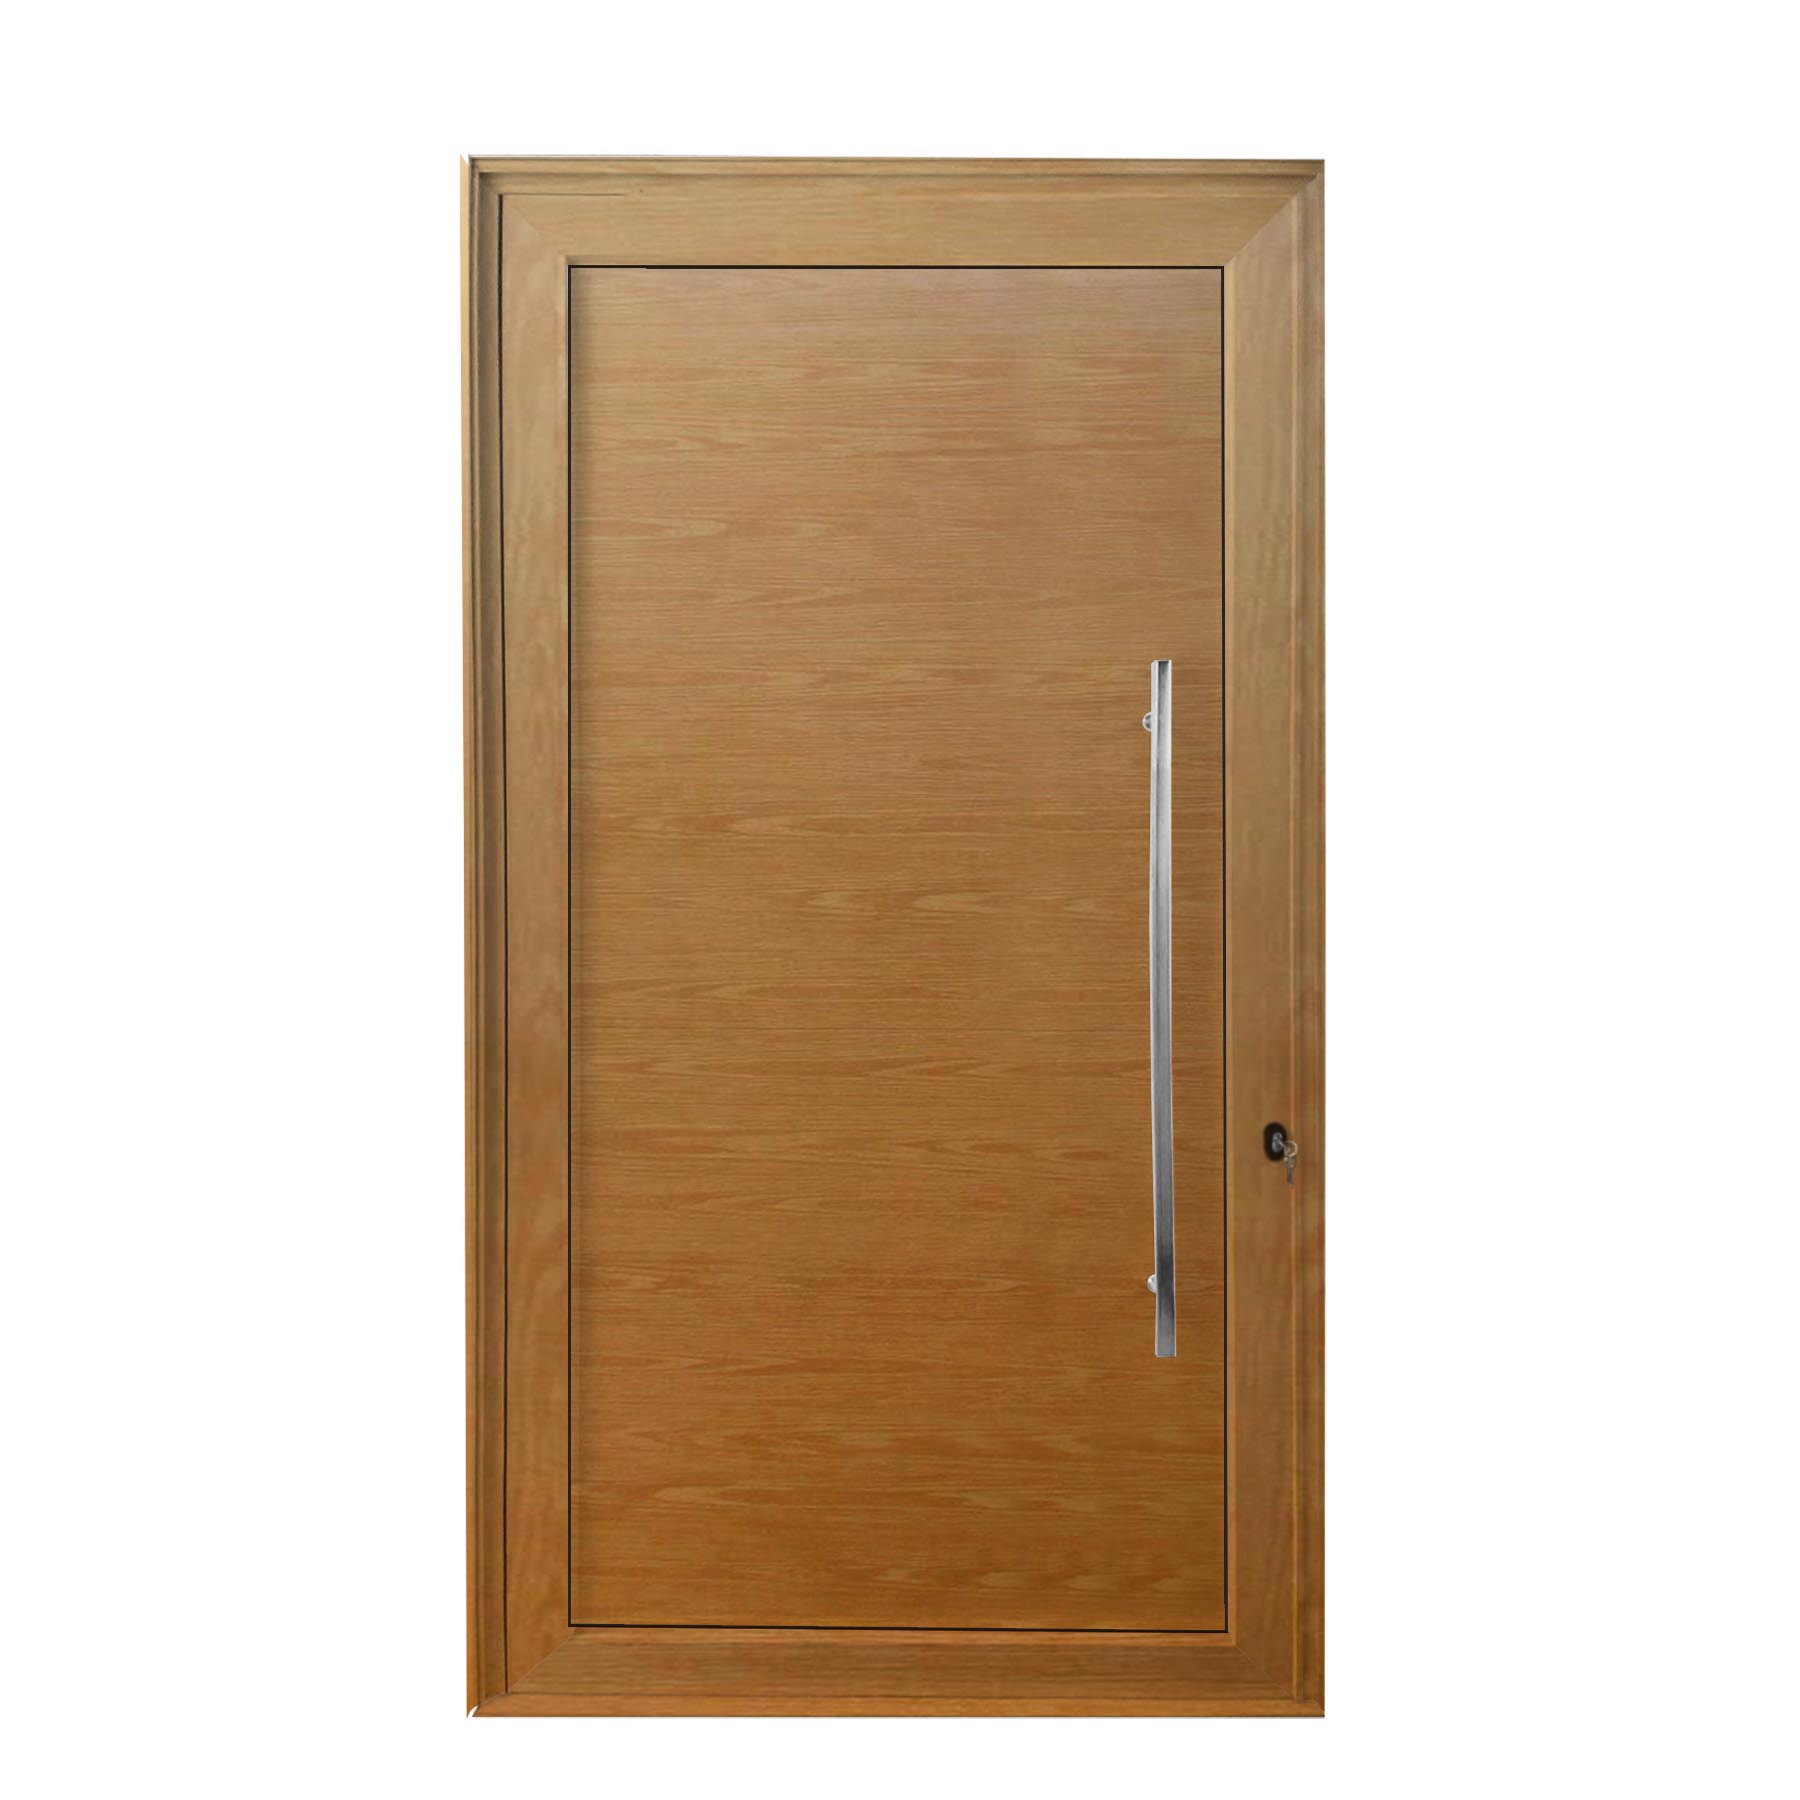 Porta de abrir 1 folha lambri cor madeira 120 x 215 com puxador inox de 100cm - fechadura monoponto ( lado esquerdo) - Sociale